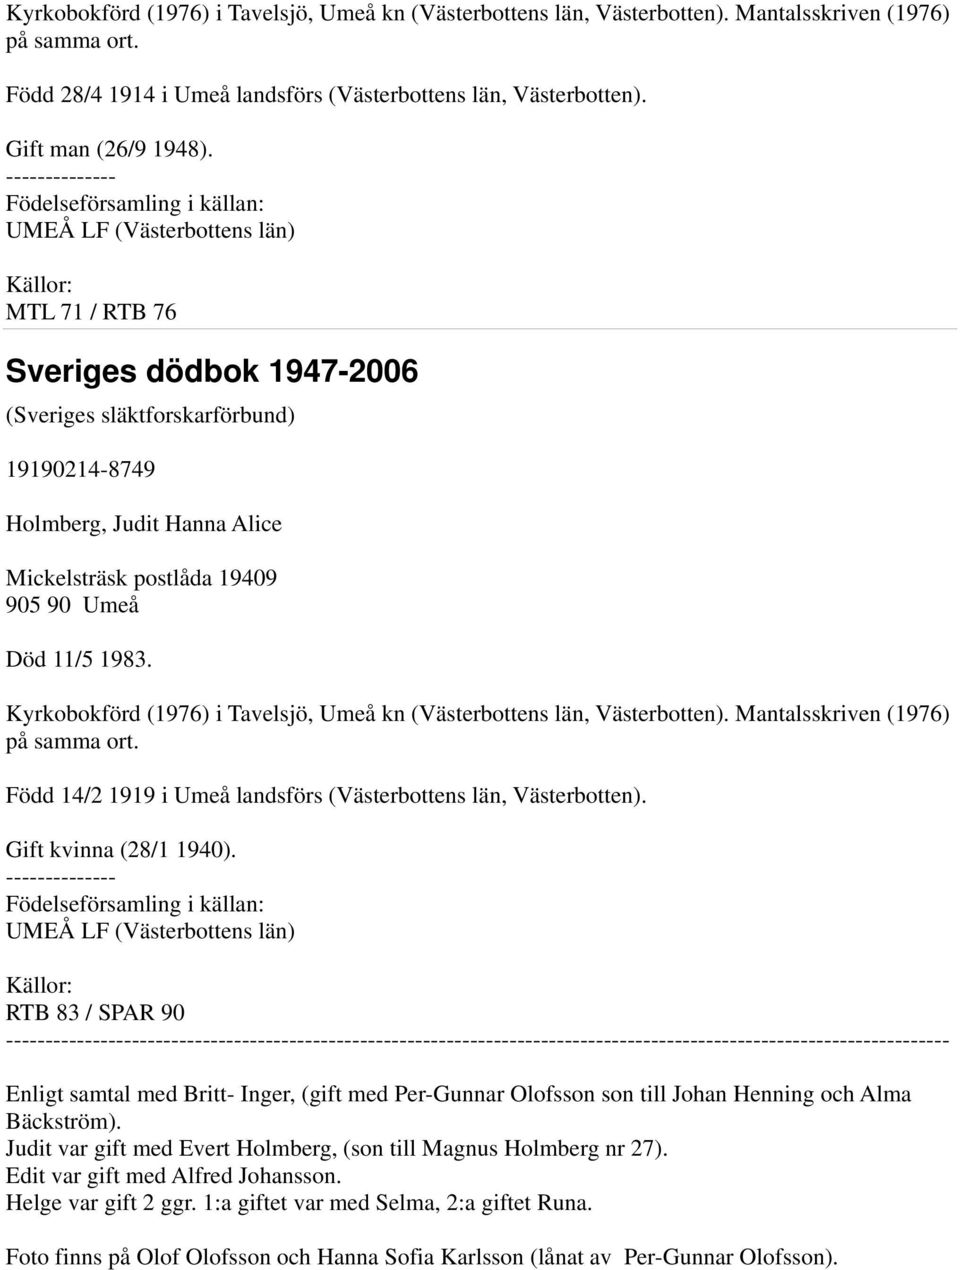 Umeå Död 11/5 1983. Kyrkobokförd (1976) i Tavelsjö, Umeå kn (Västerbottens län, Västerbotten). Mantalsskriven (1976) på samma ort. Född 14/2 1919 i Umeå landsförs (Västerbottens län, Västerbotten).